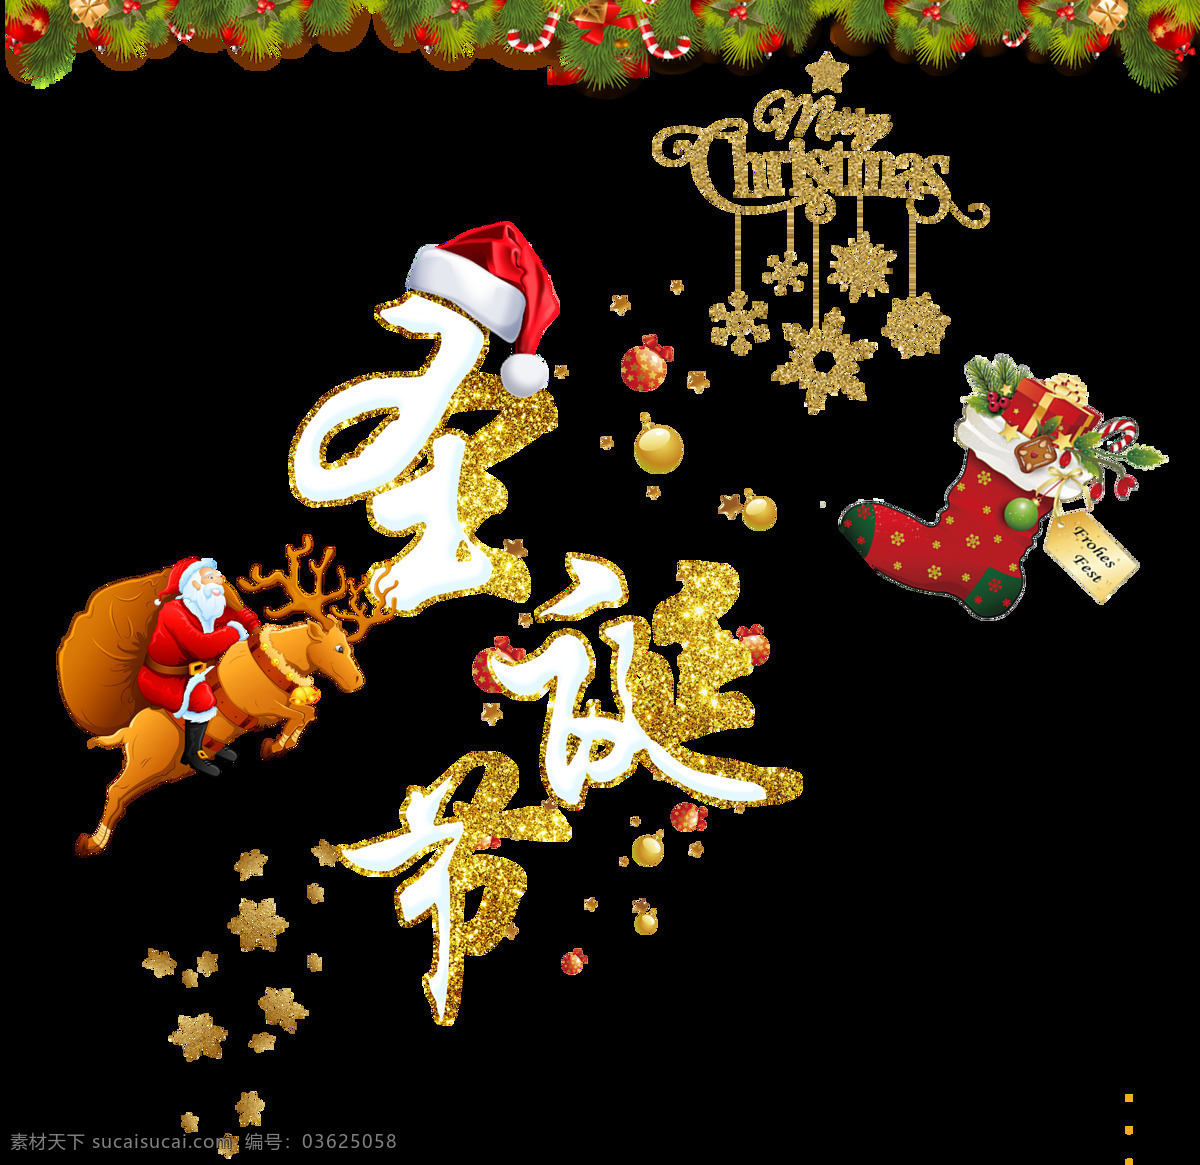 创意 圣诞 元素 字体 2018圣诞 christmas merry 彩色字体 创意字体素材 节日字体 卡通圣诞元素 圣诞帽 圣诞袜 新年快乐 元旦快乐